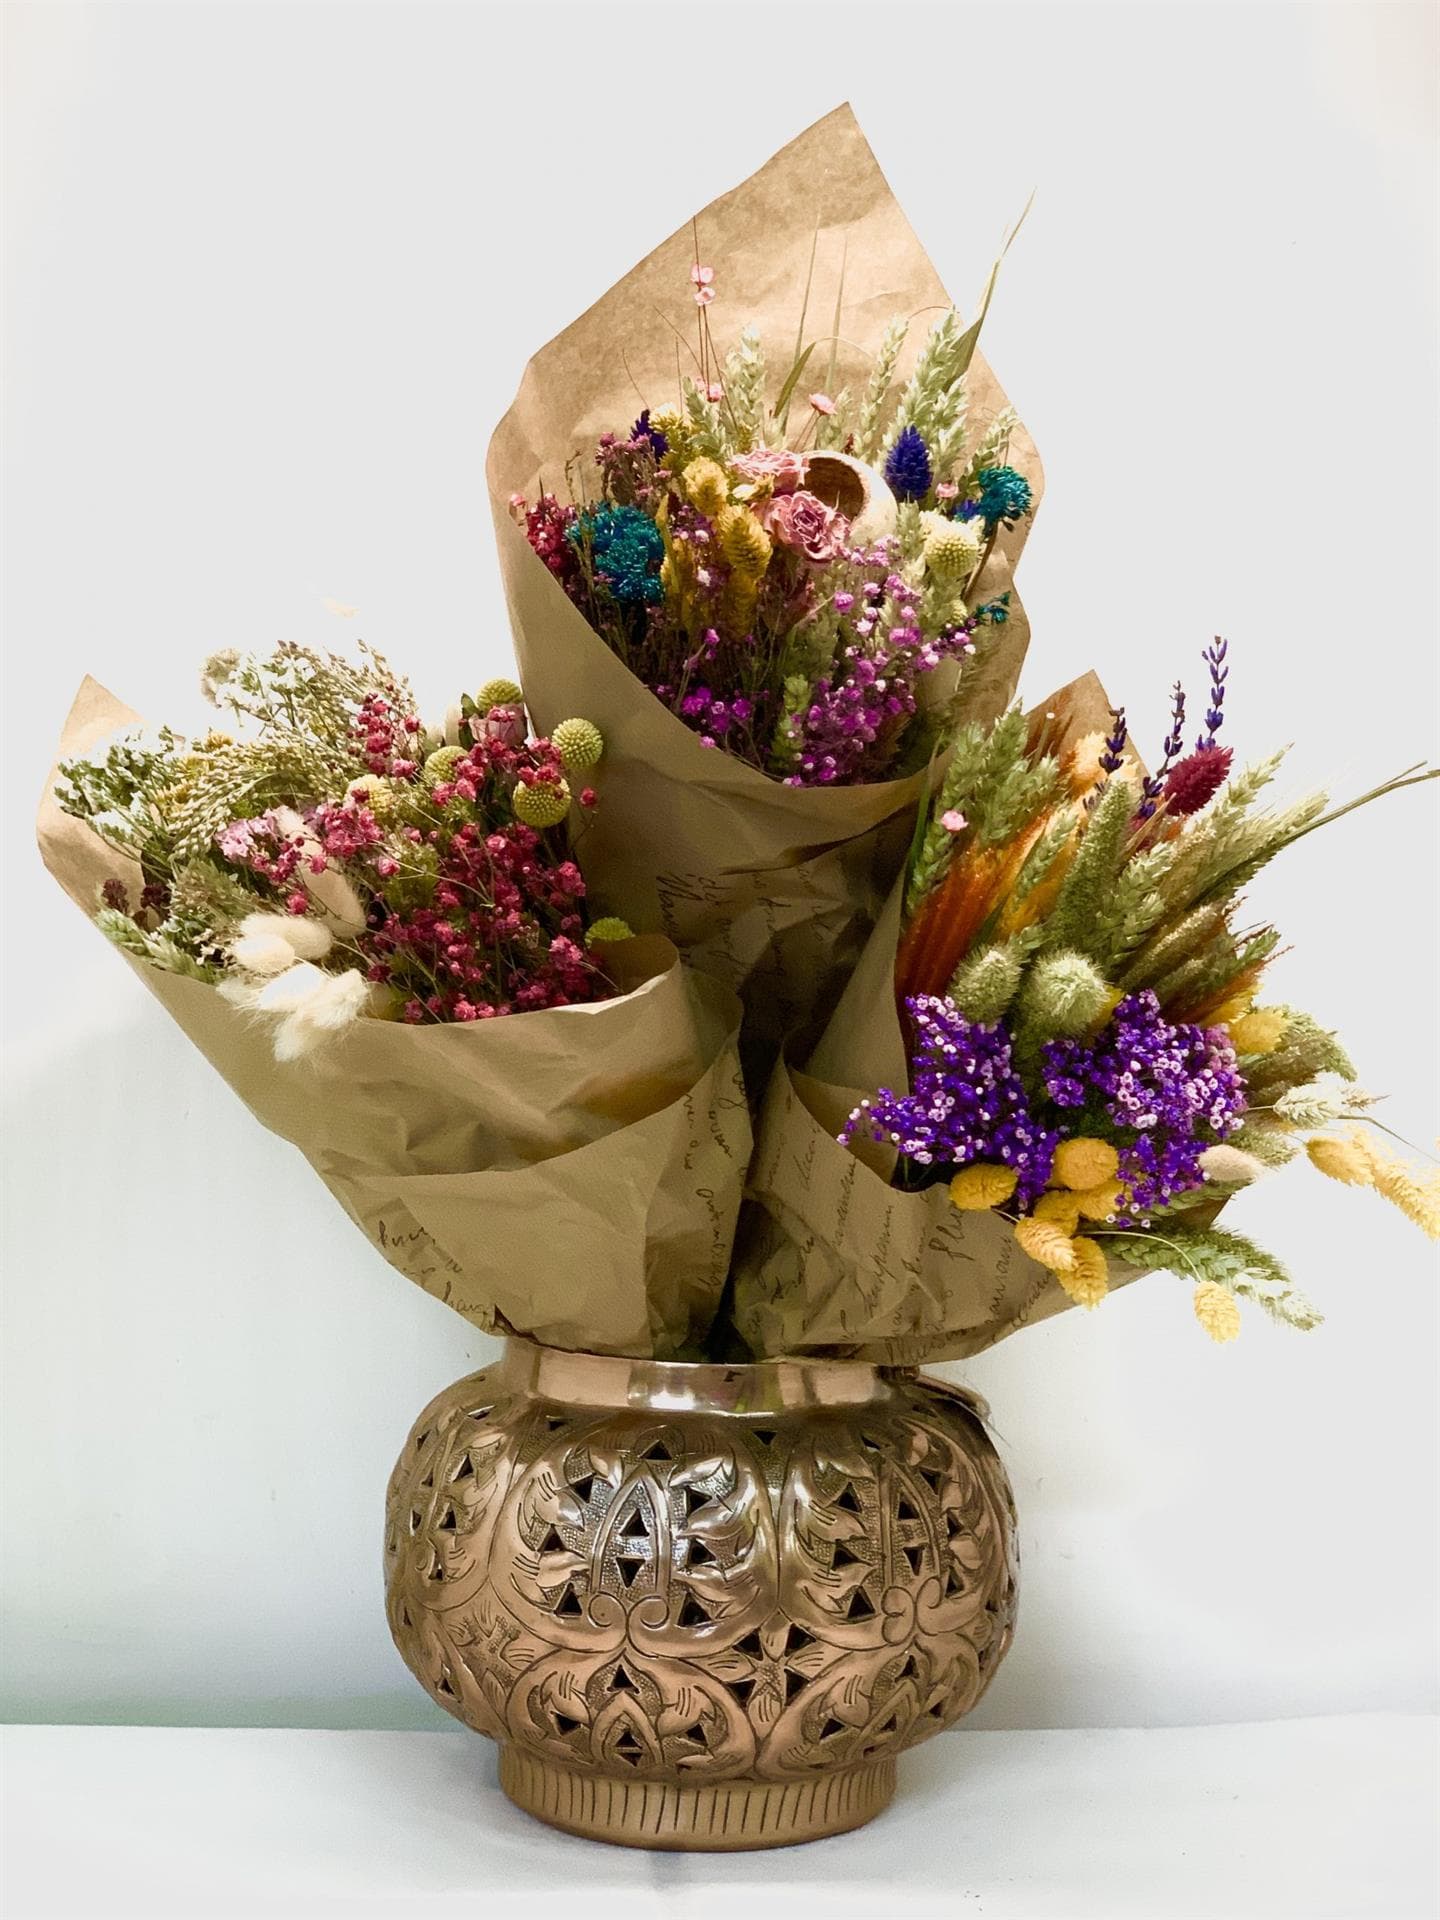  Floristería en Caldas con envío de flores a domicilio